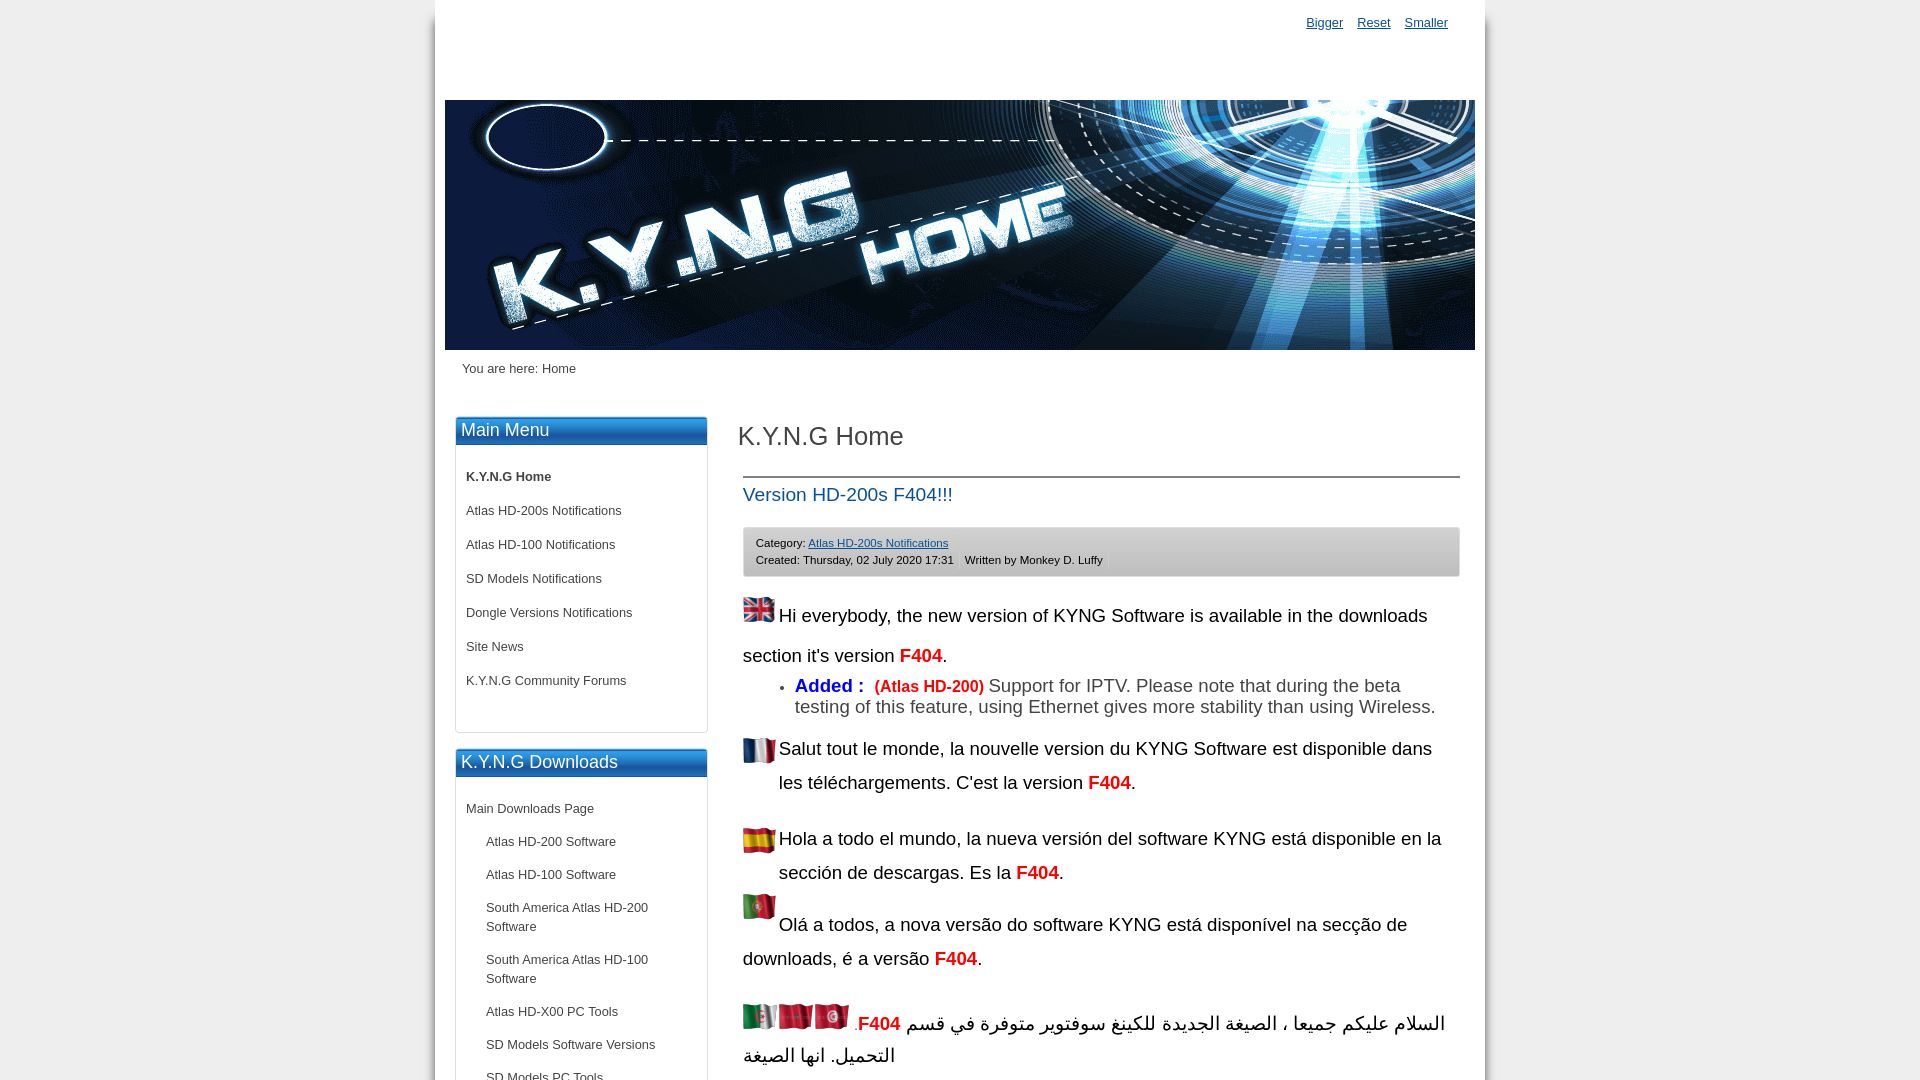 État du site web kyngdvb.com est   EN LIGNE